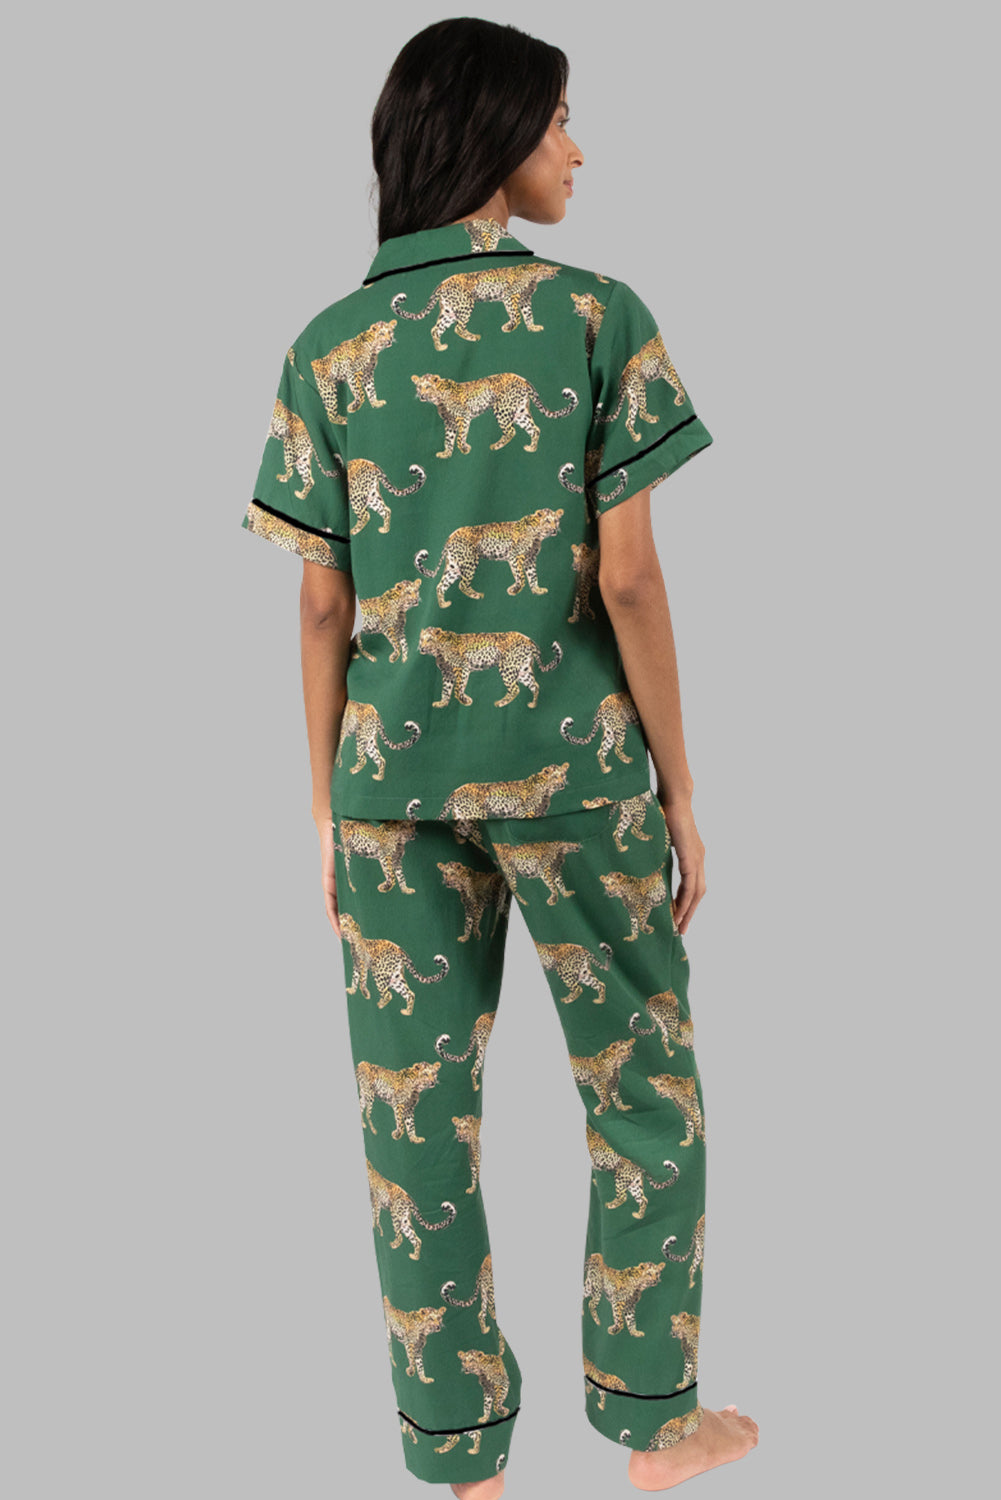 Komplet majica kratkih rukava i pidžama s printom zelenog geparda